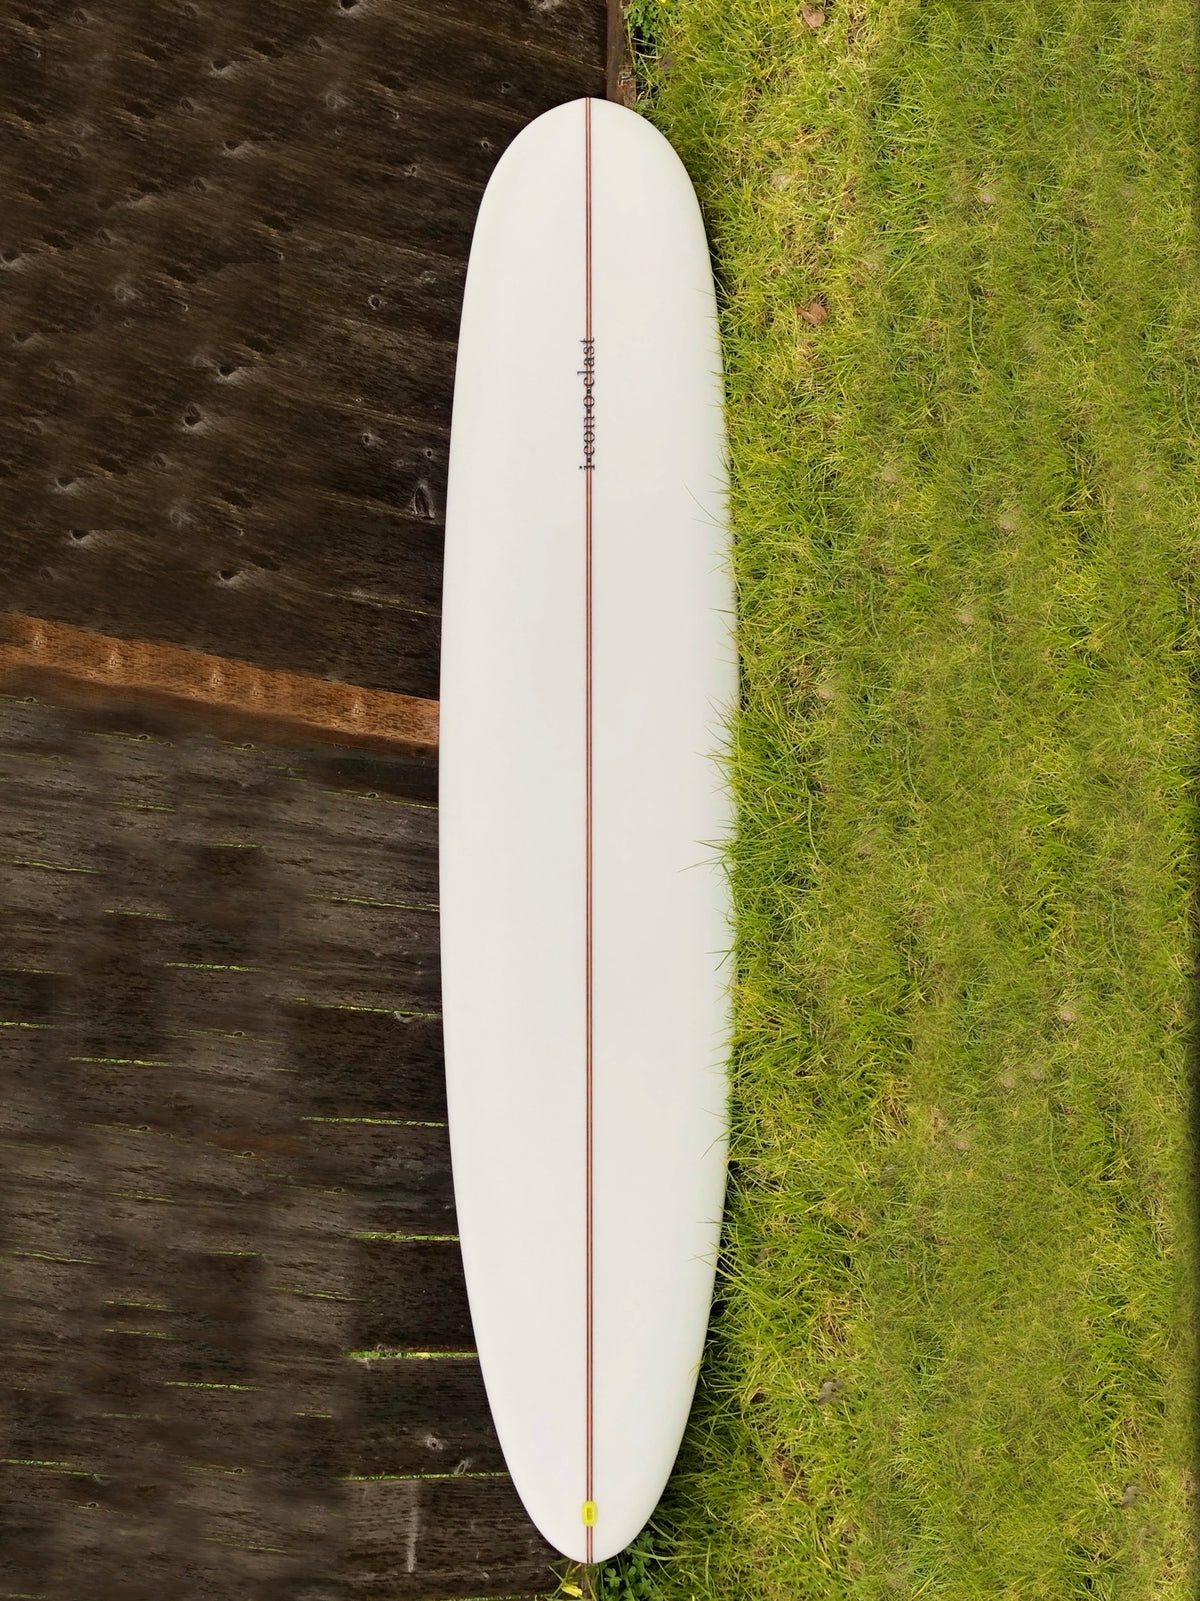 Iconoclast Longboard Surfboard 9’0” “Style & Aloha” Model